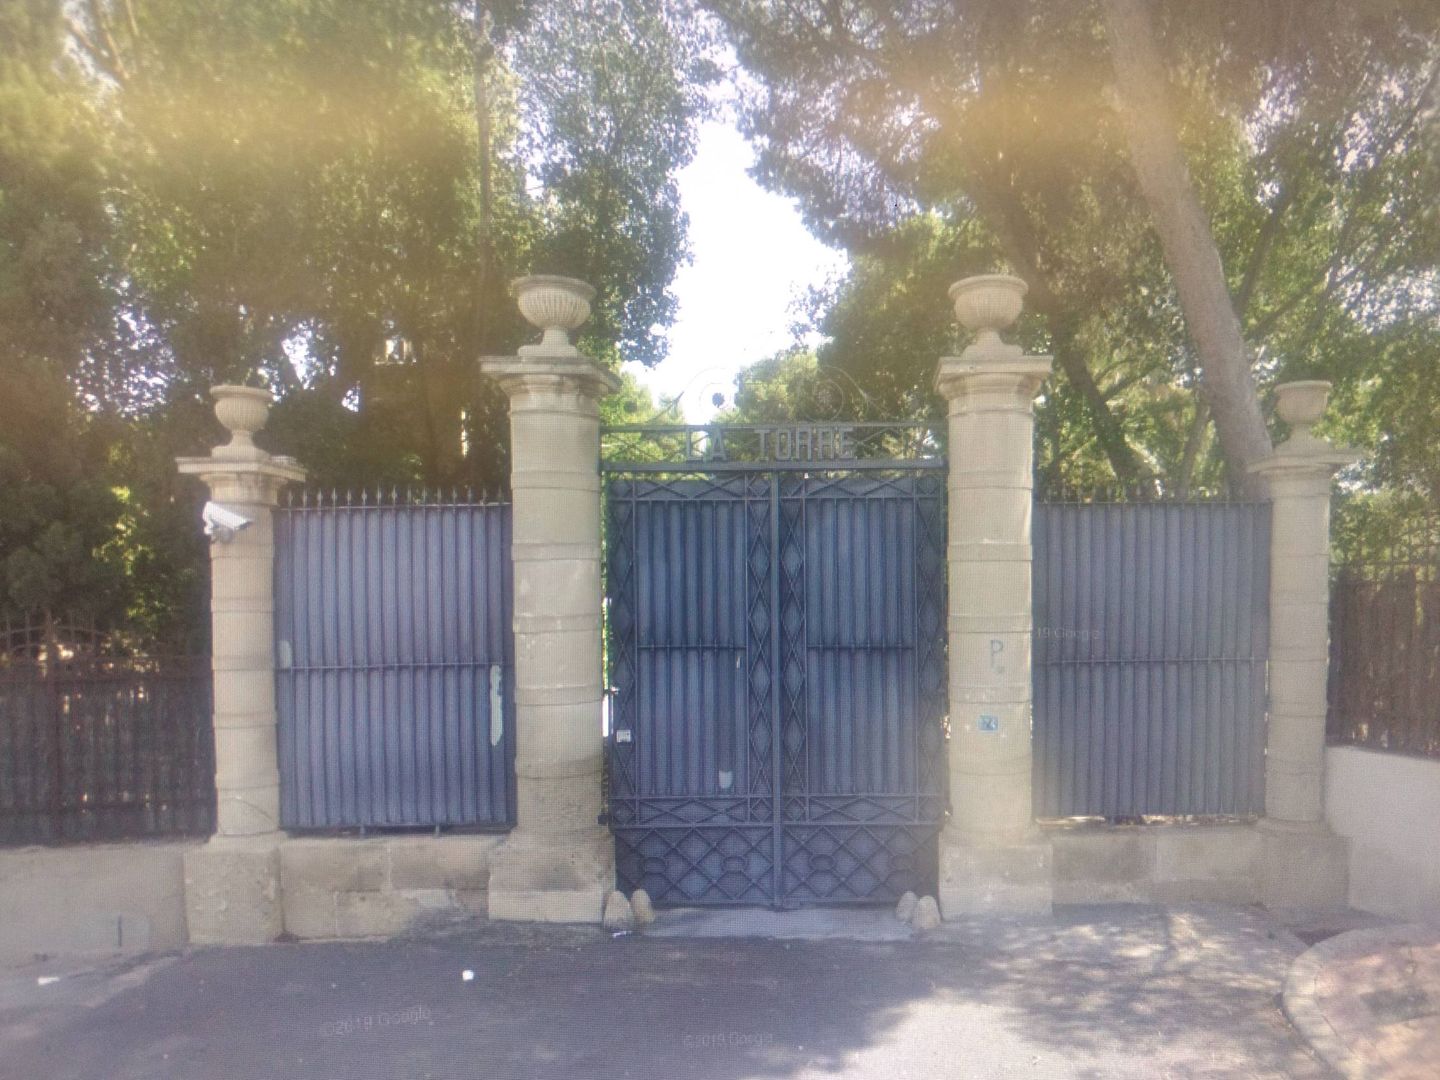 Portón de la finca familiar en Alicante (Google Maps)